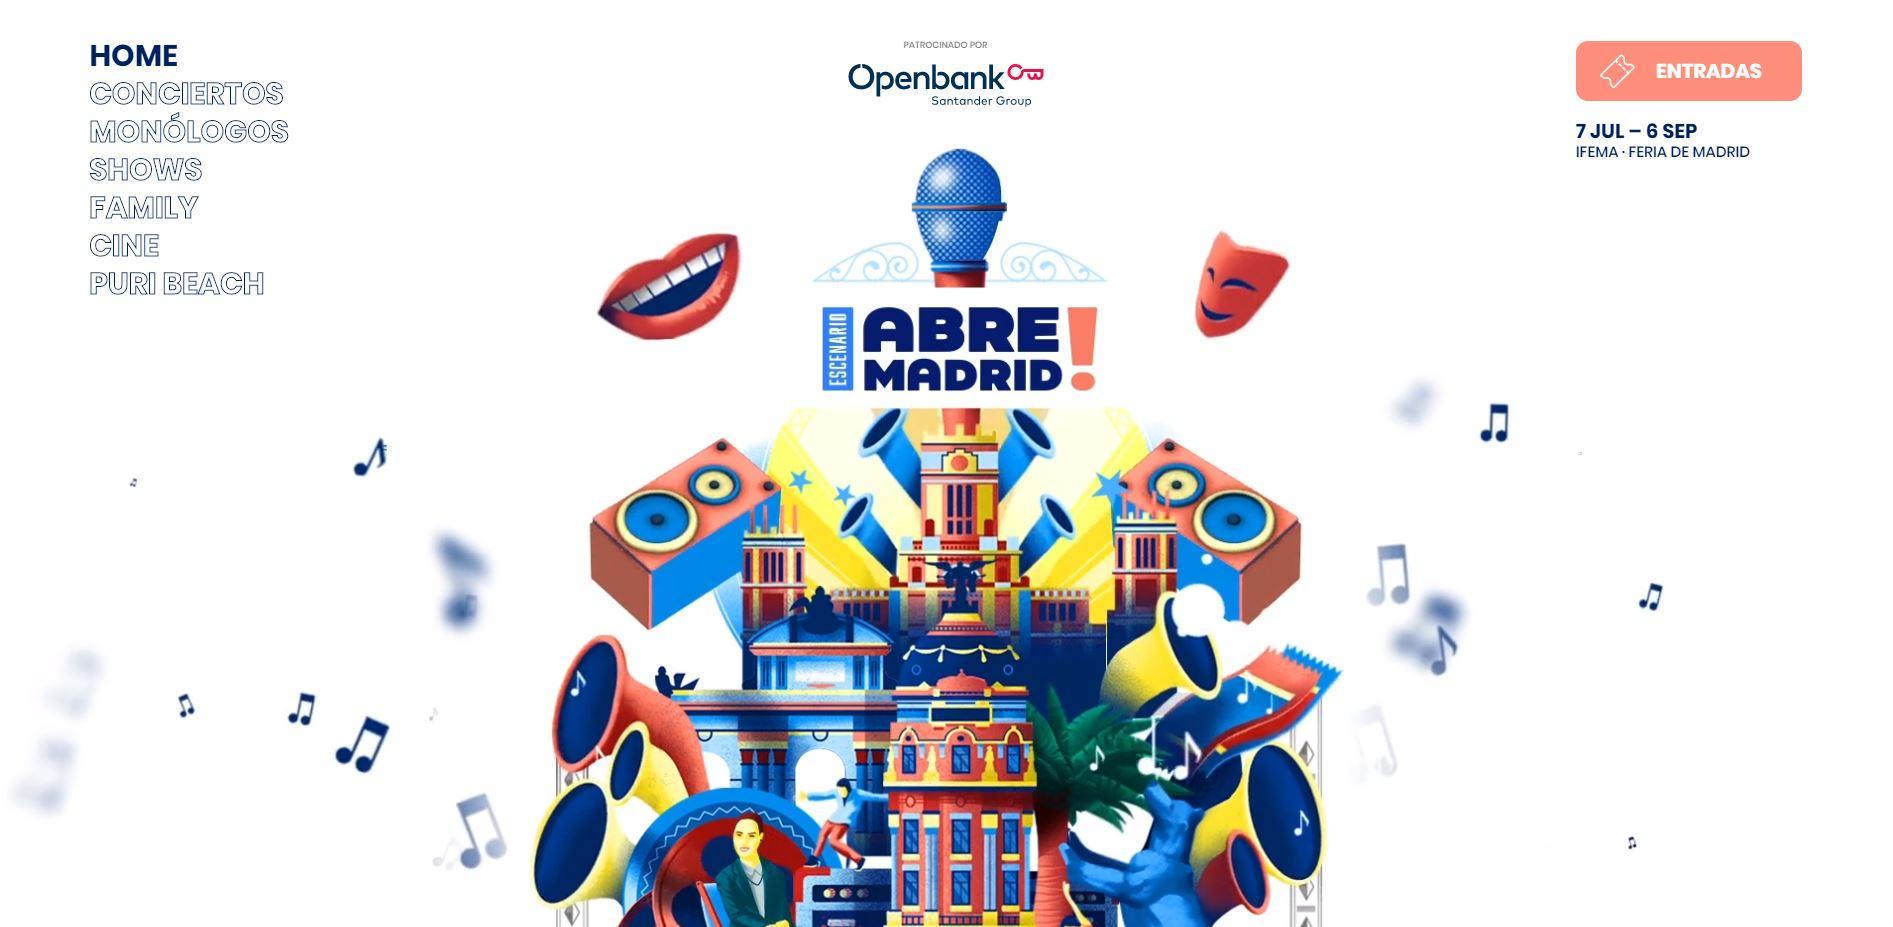 Imagen promocional de Abre Madrid con el patrocinio de Openbank